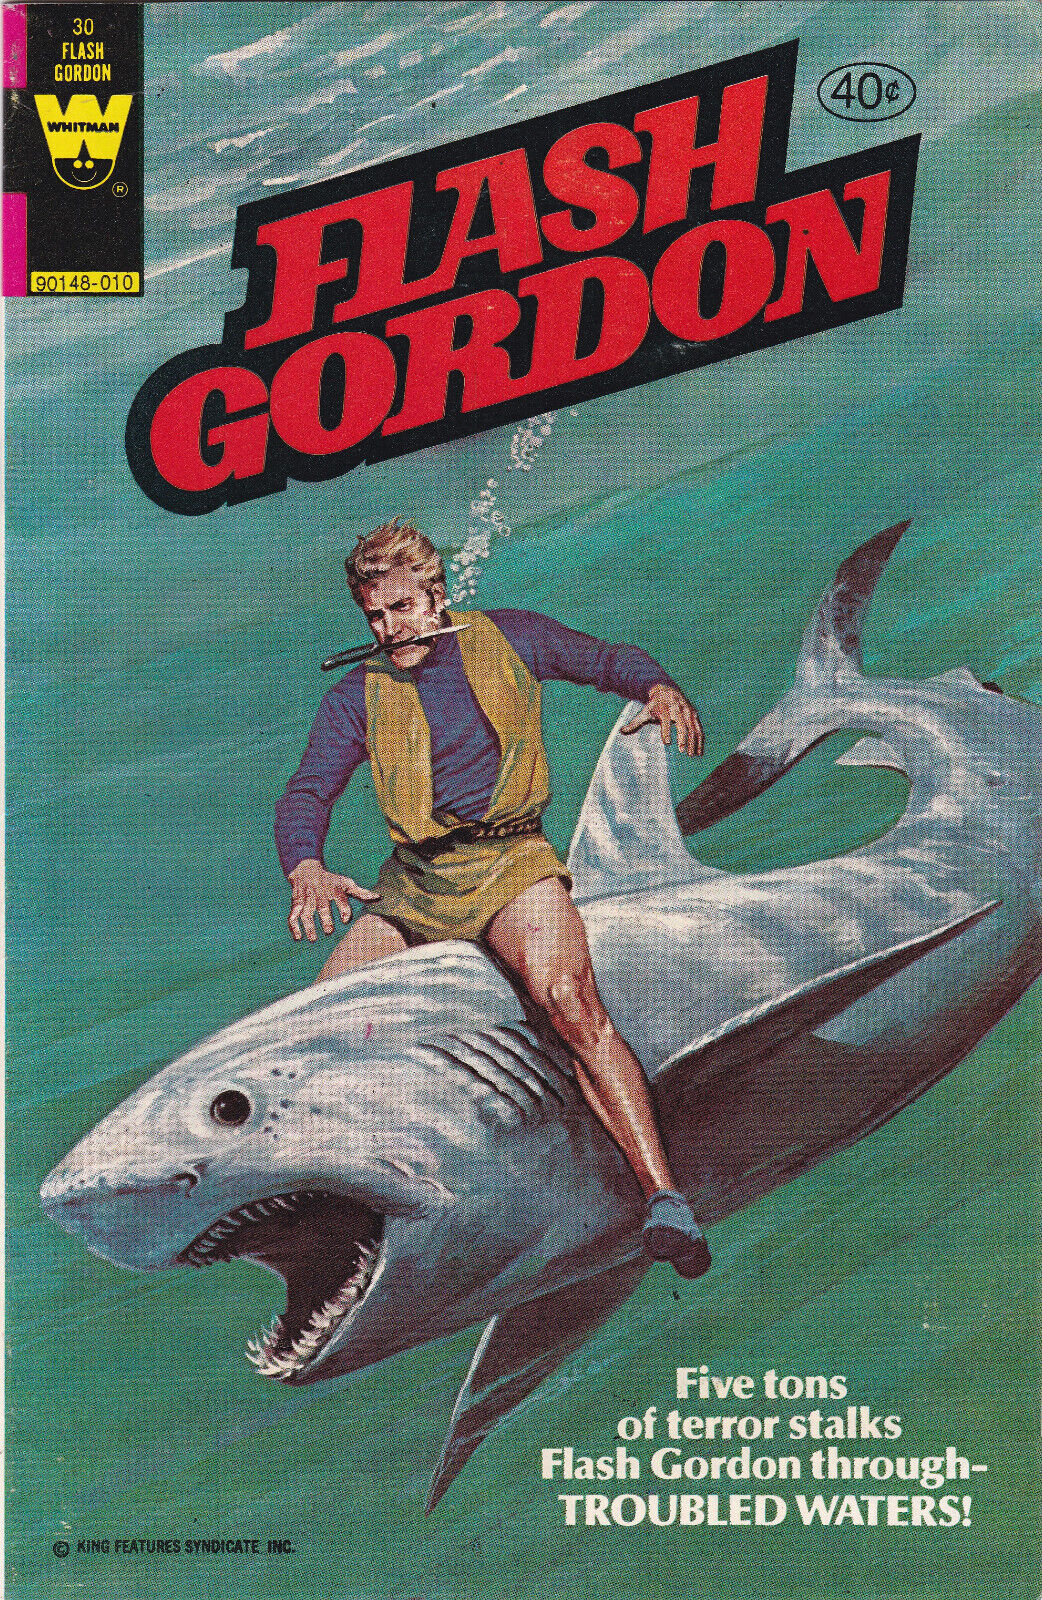 Flash Gordon #30A $0.40 Cover Price VF+ 1980 Super Rare Bronze Age Comic